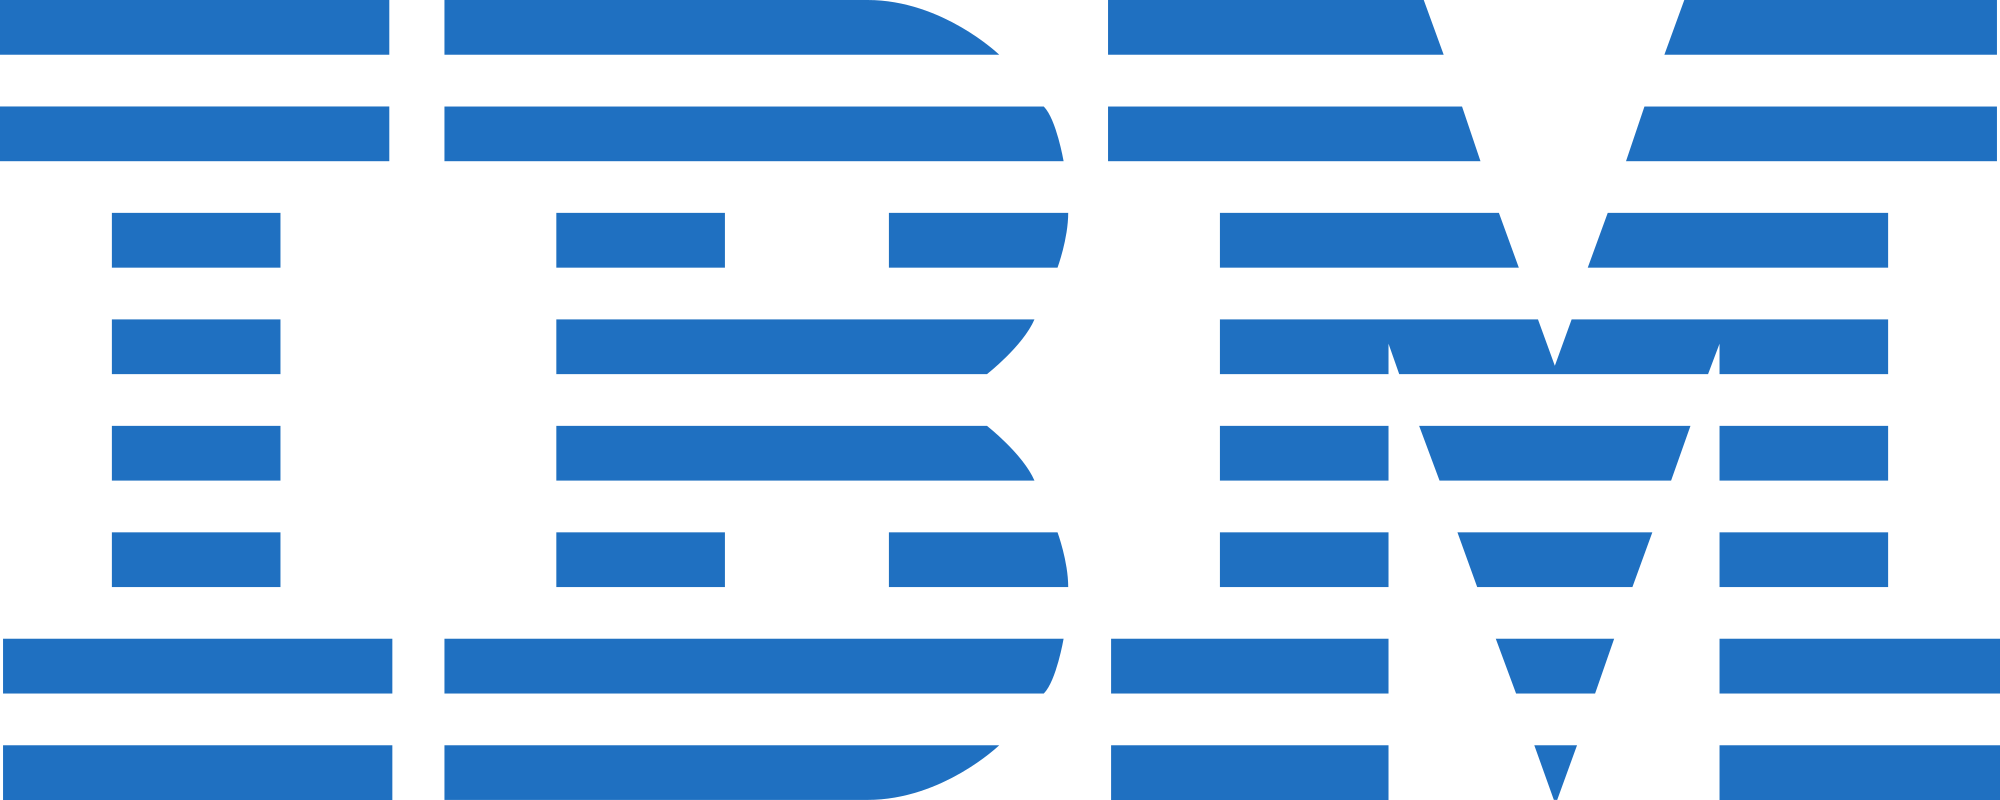 IBM logos PNG images free